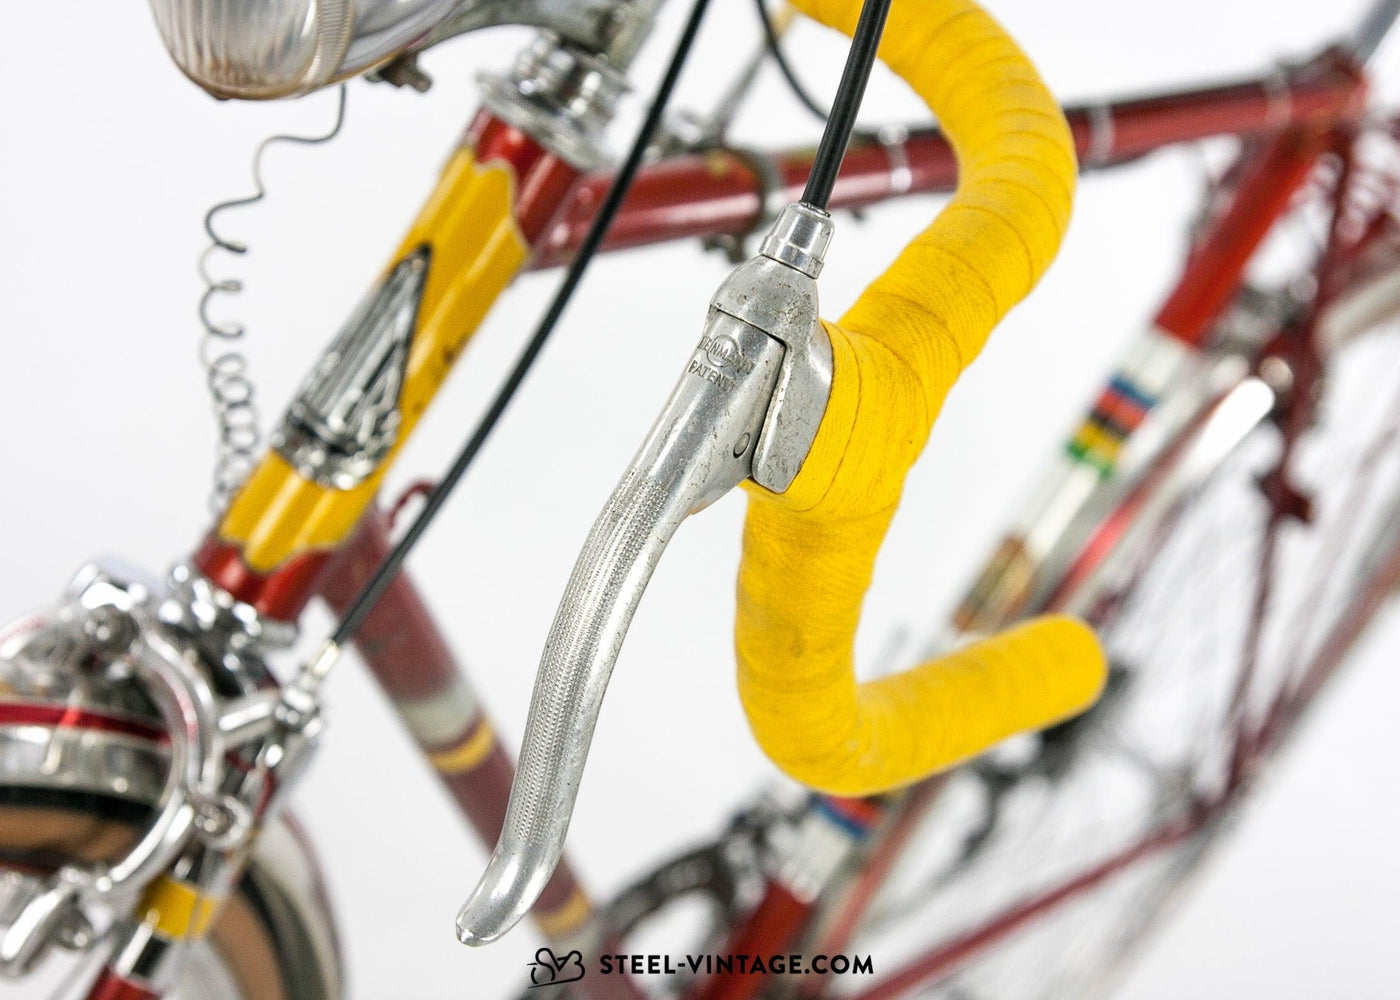 Bauer Super Sport Classic Randonneur Bicycle 1950s - Steel Vintage Bikes